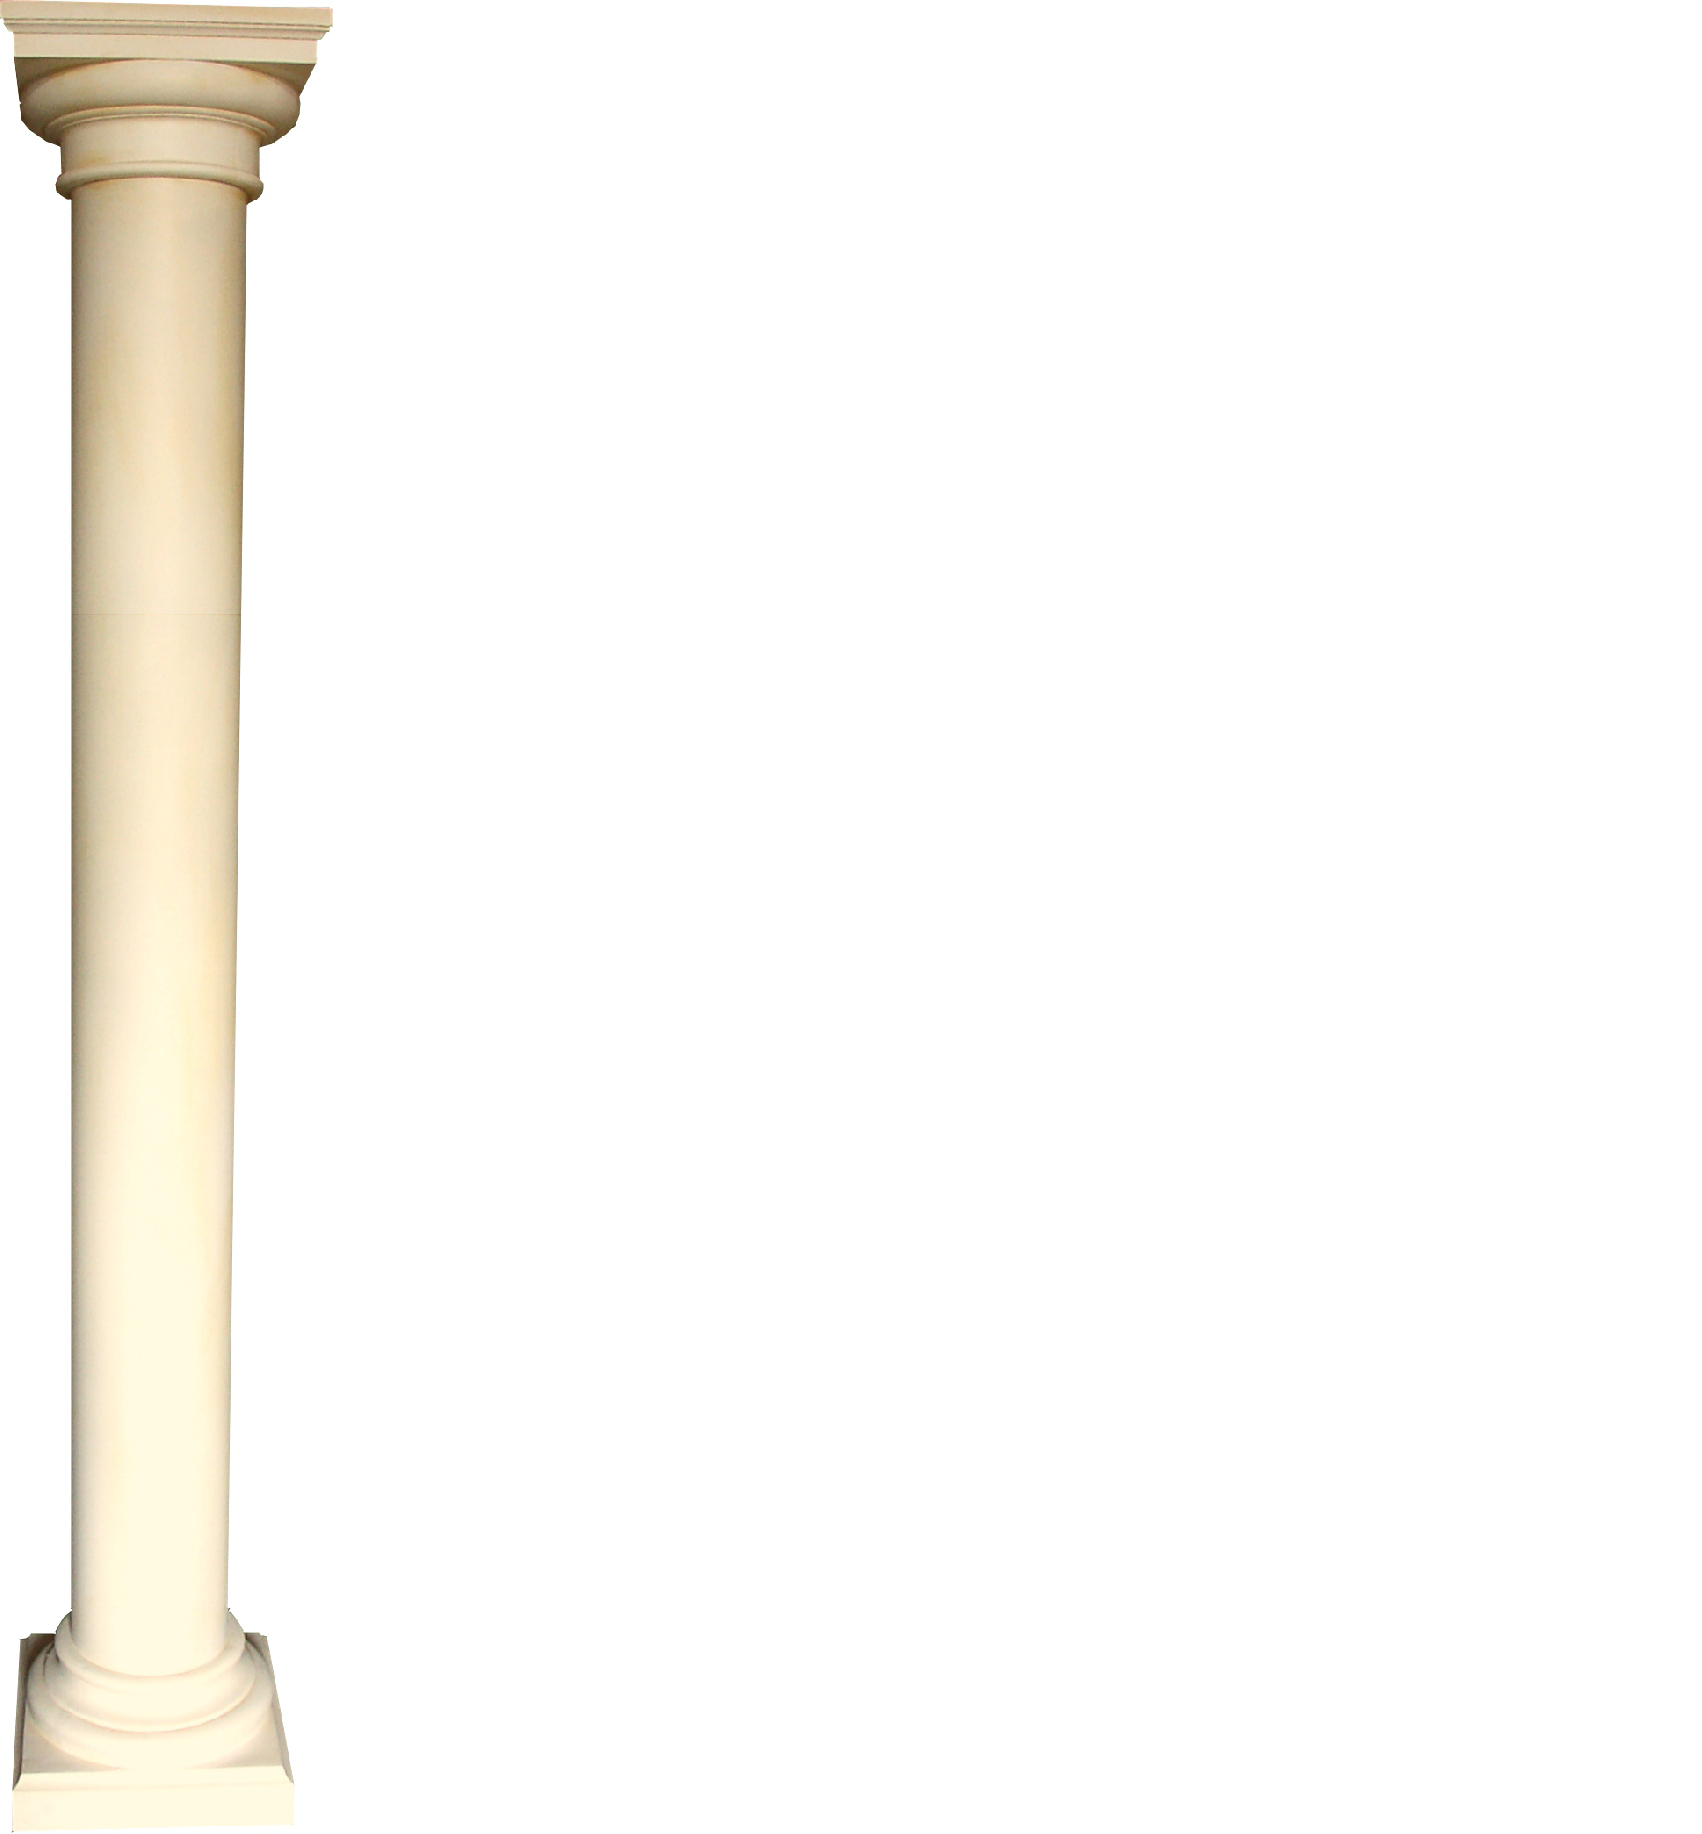 XXL Griechische Säule Antik Stil Design Luxus Säulen Stützen Neu 210cm